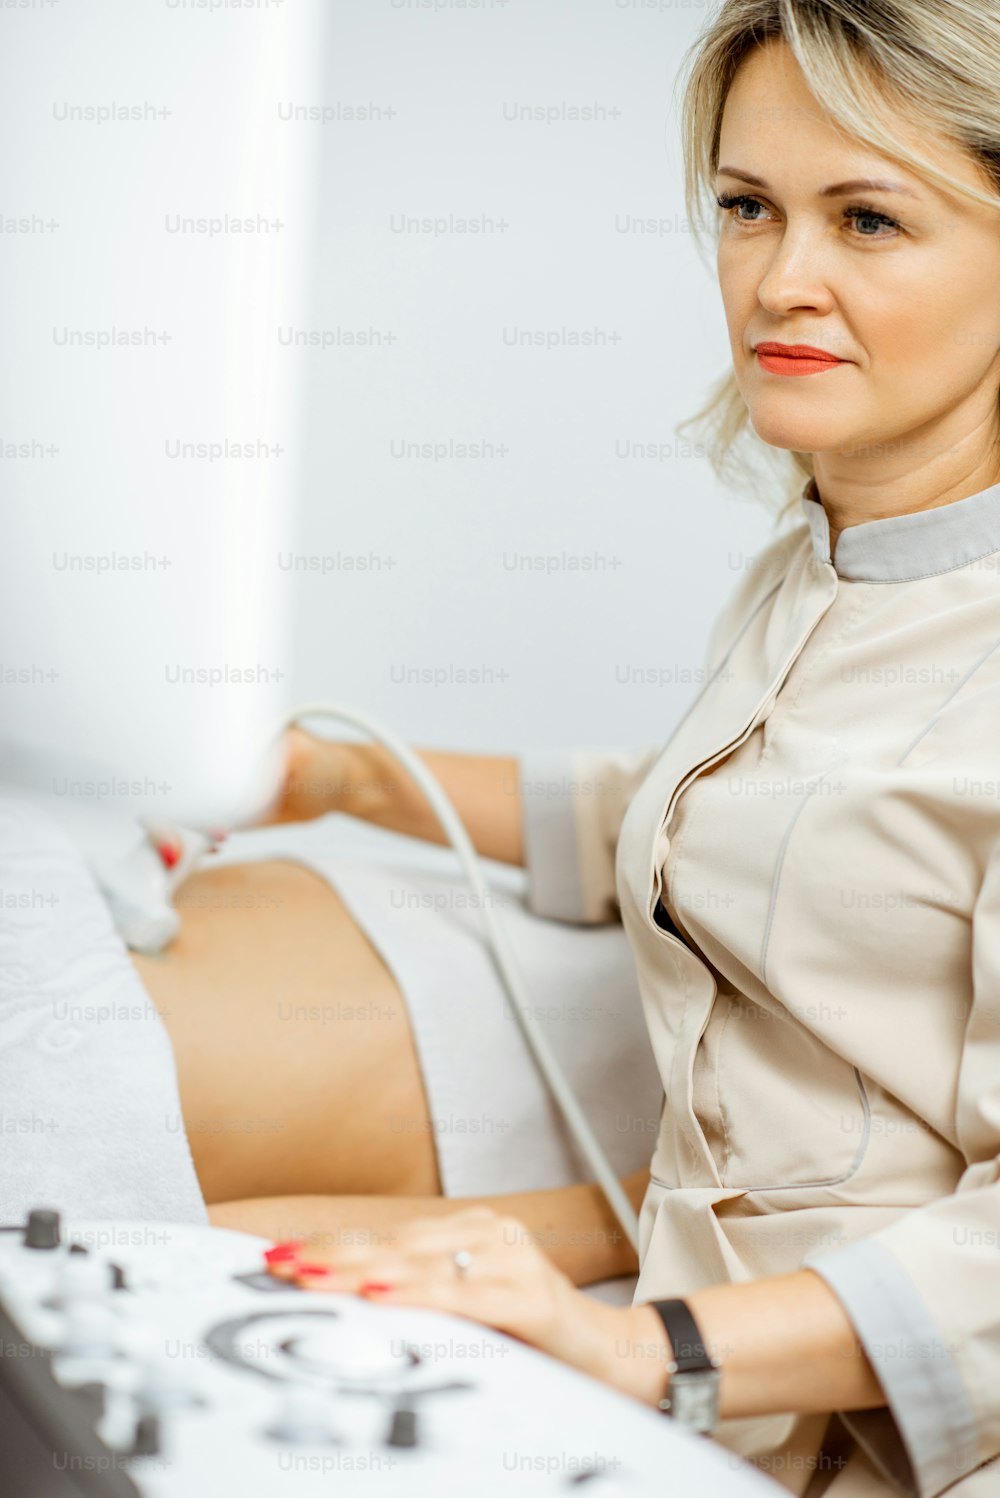 Ärztin führt Ultraschalluntersuchung der Beckenorgane einer Frau durch oder diagnostiziert eine frühe Schwangerschaft in der Arztpraxis